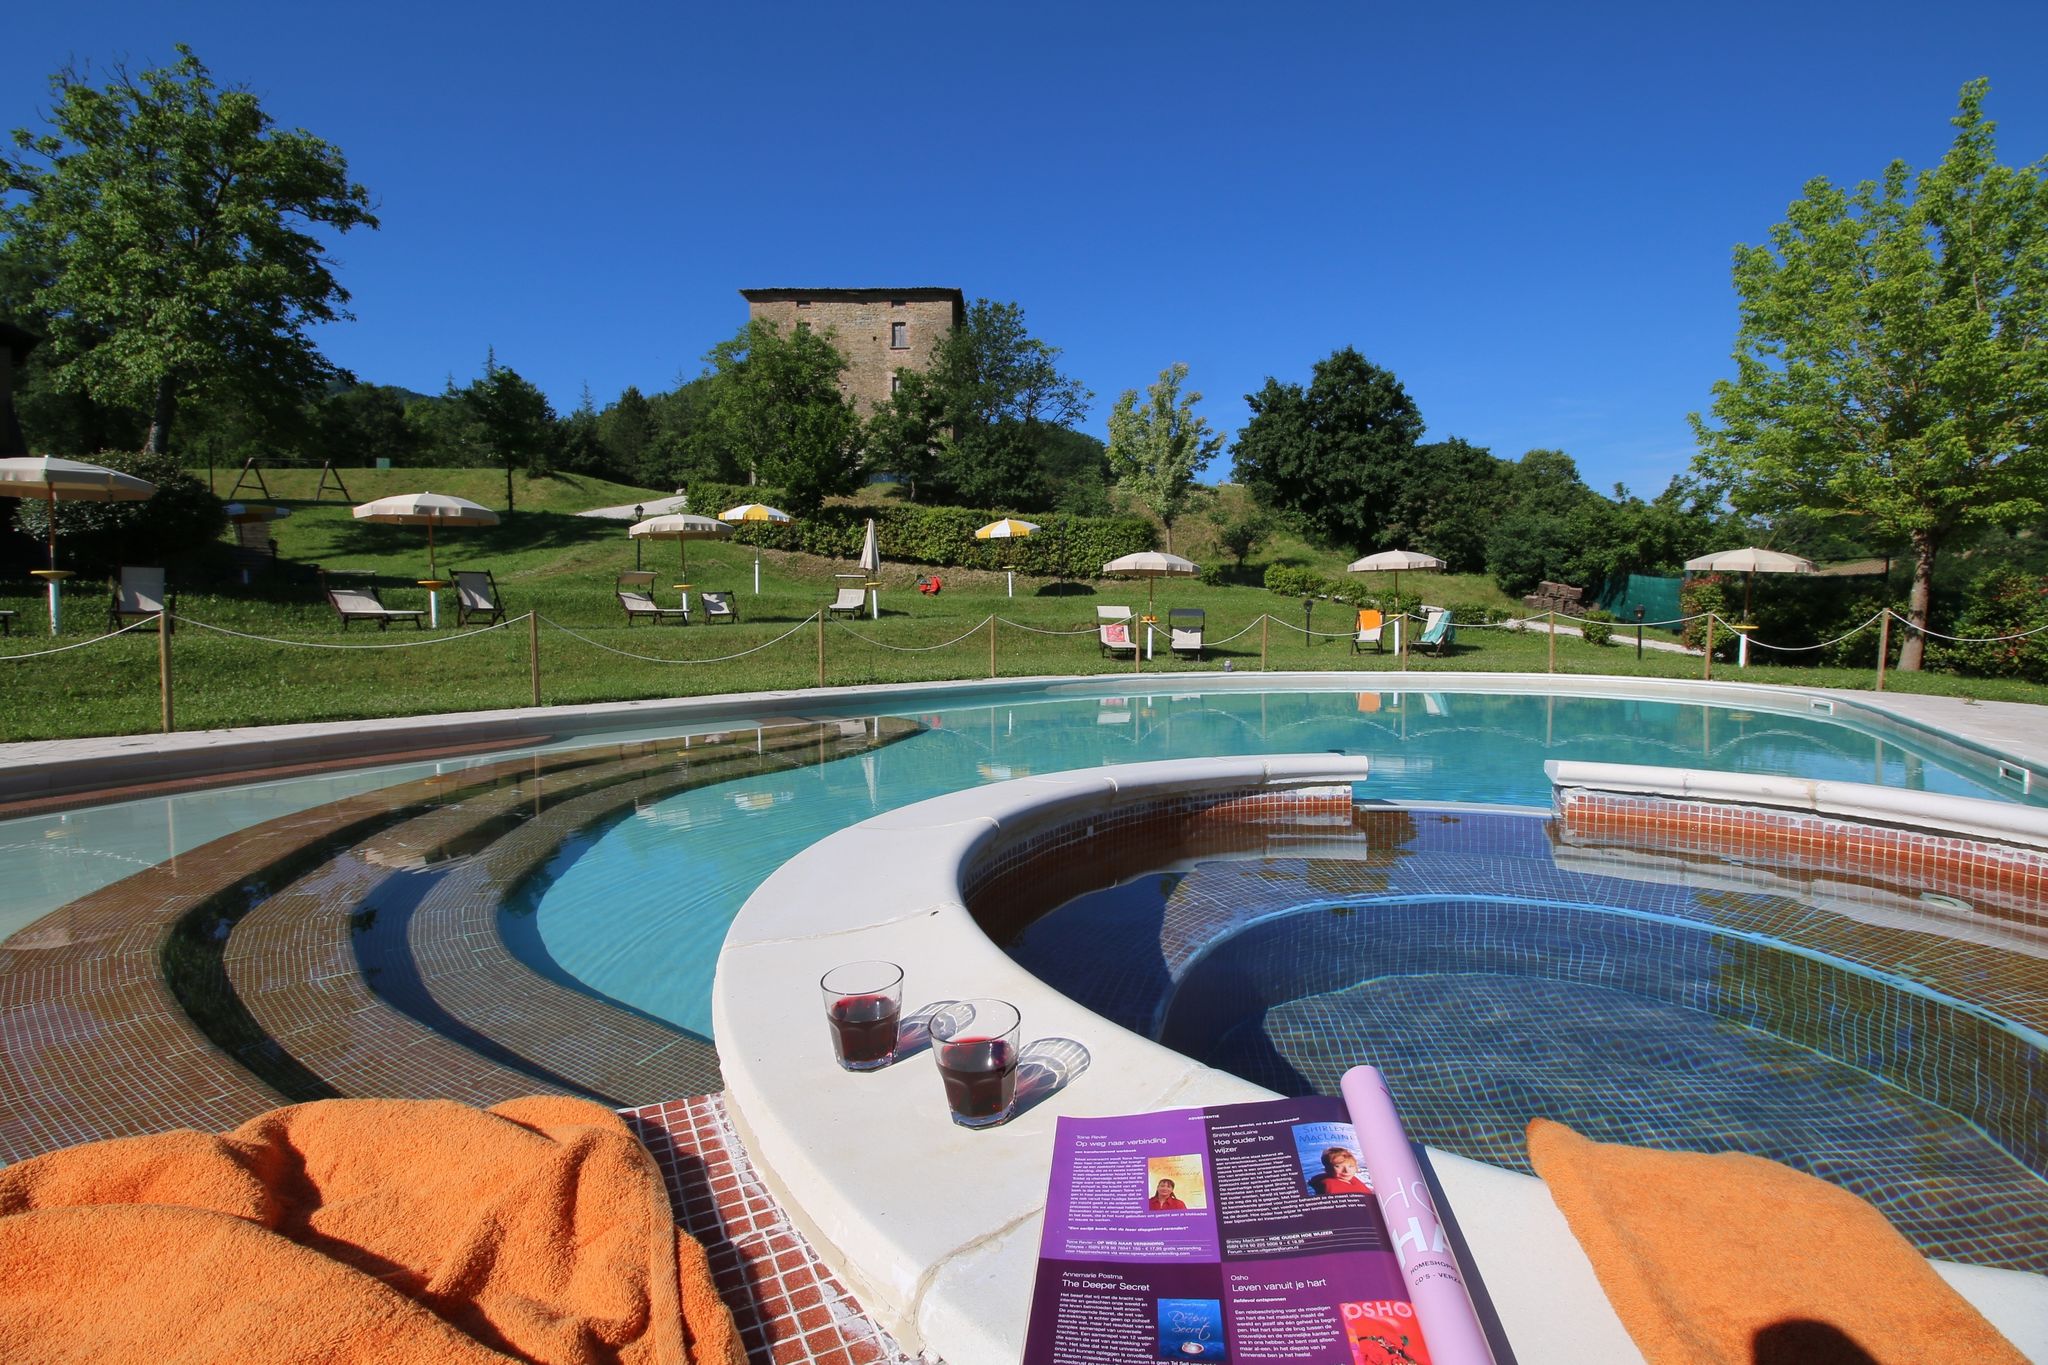 Landgoed met zwembad, ruime tuin, privé terras en mooi uitzicht

